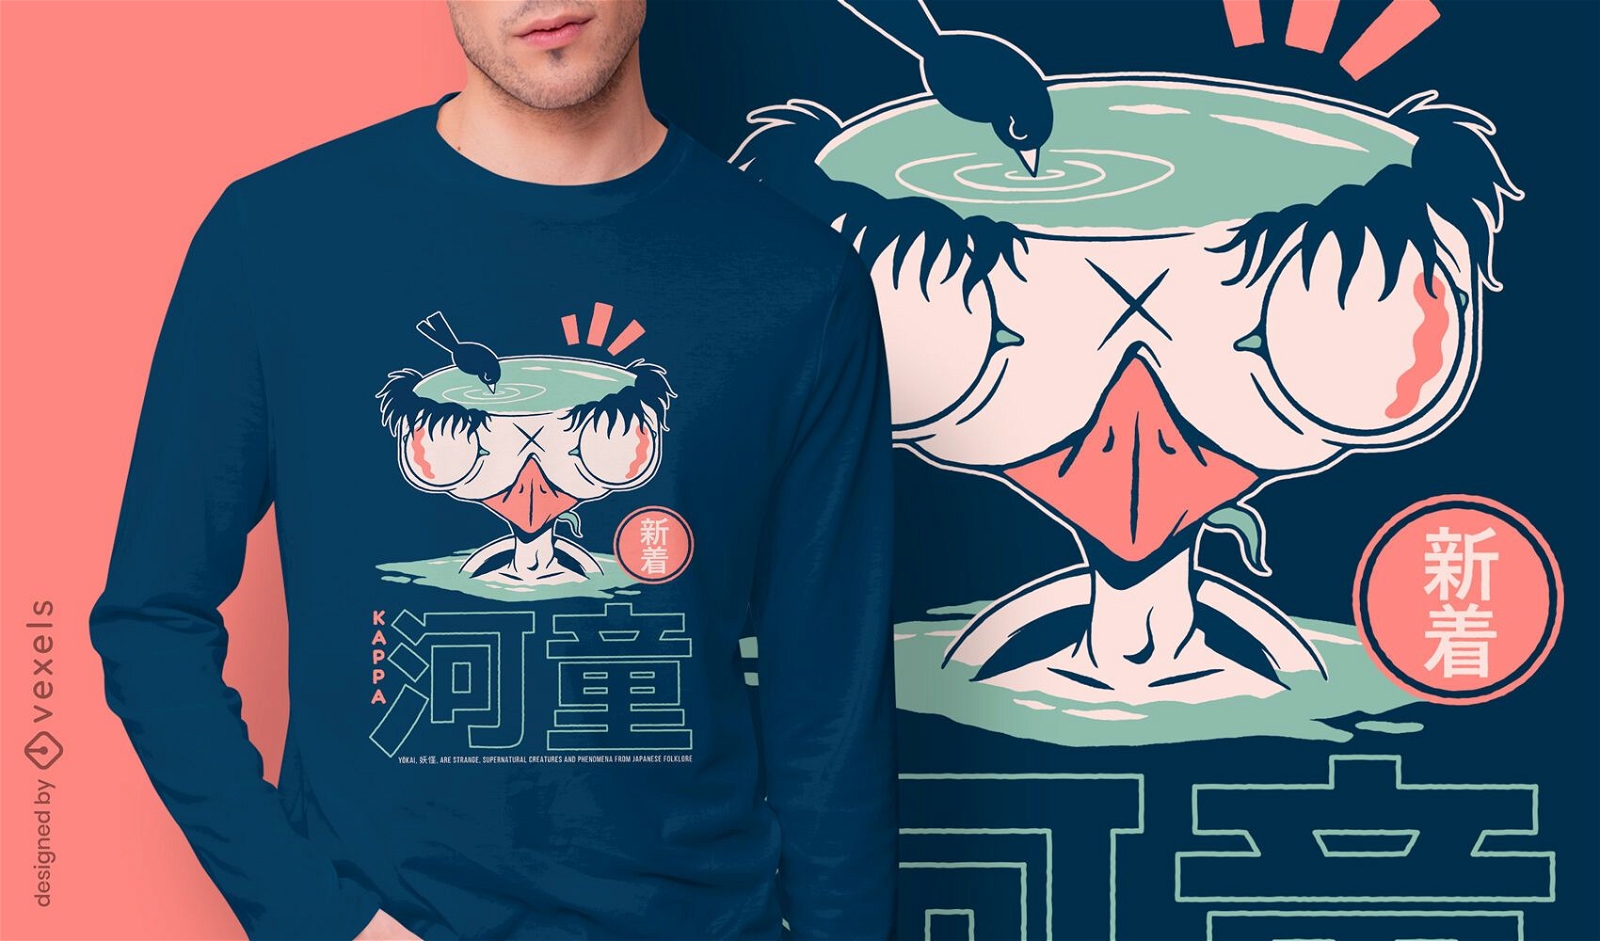 Kappa japanese yokai t-shirt design